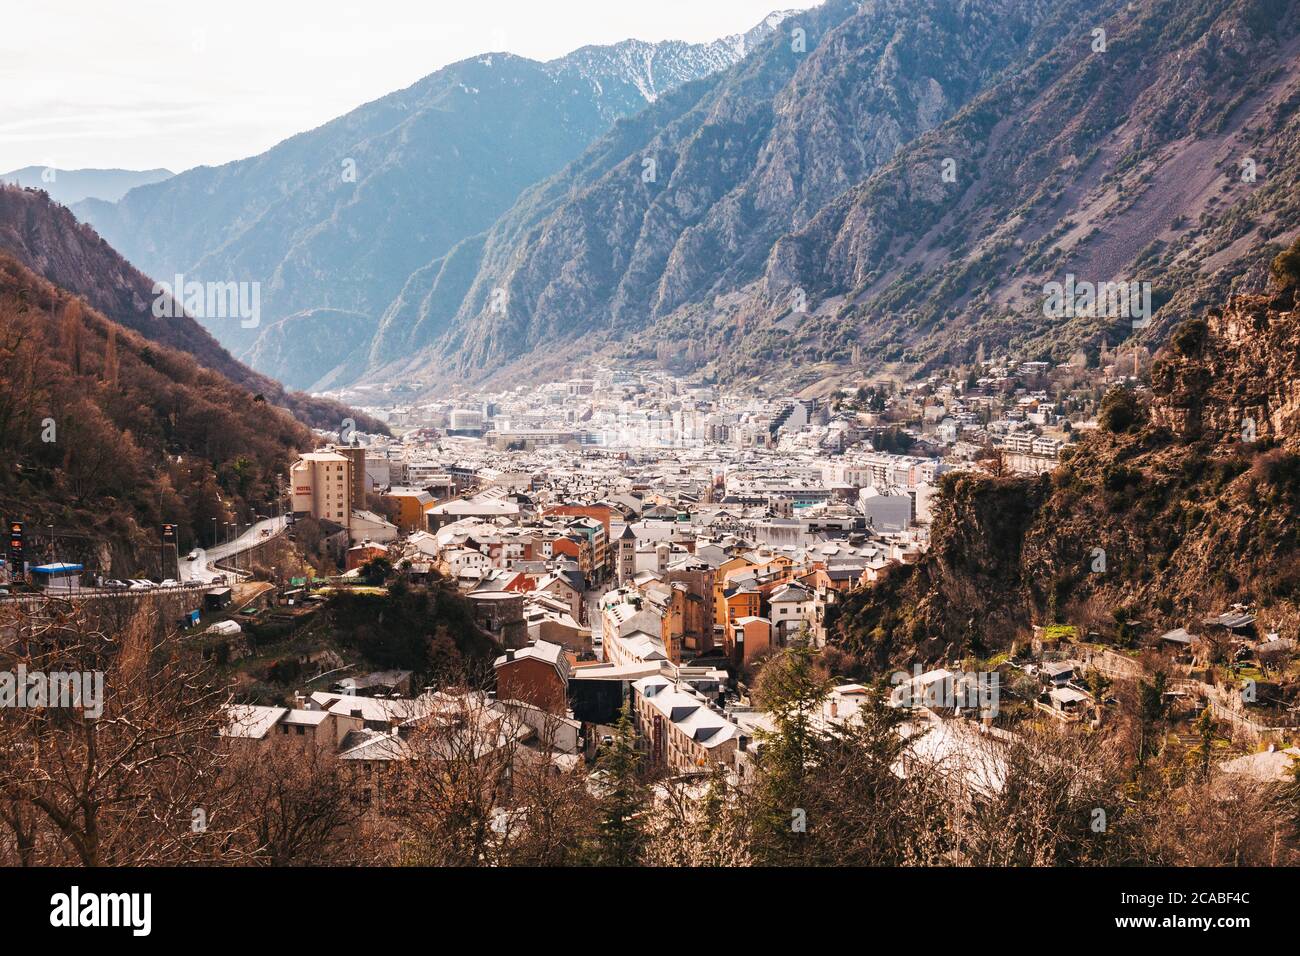 La ville d'Andorre-la-Vieille, capitale d'Andorre, située dans la vallée de la Gran Valira, dans le sud des Pyrénées. Il n'y a que 23,000 résidents Banque D'Images